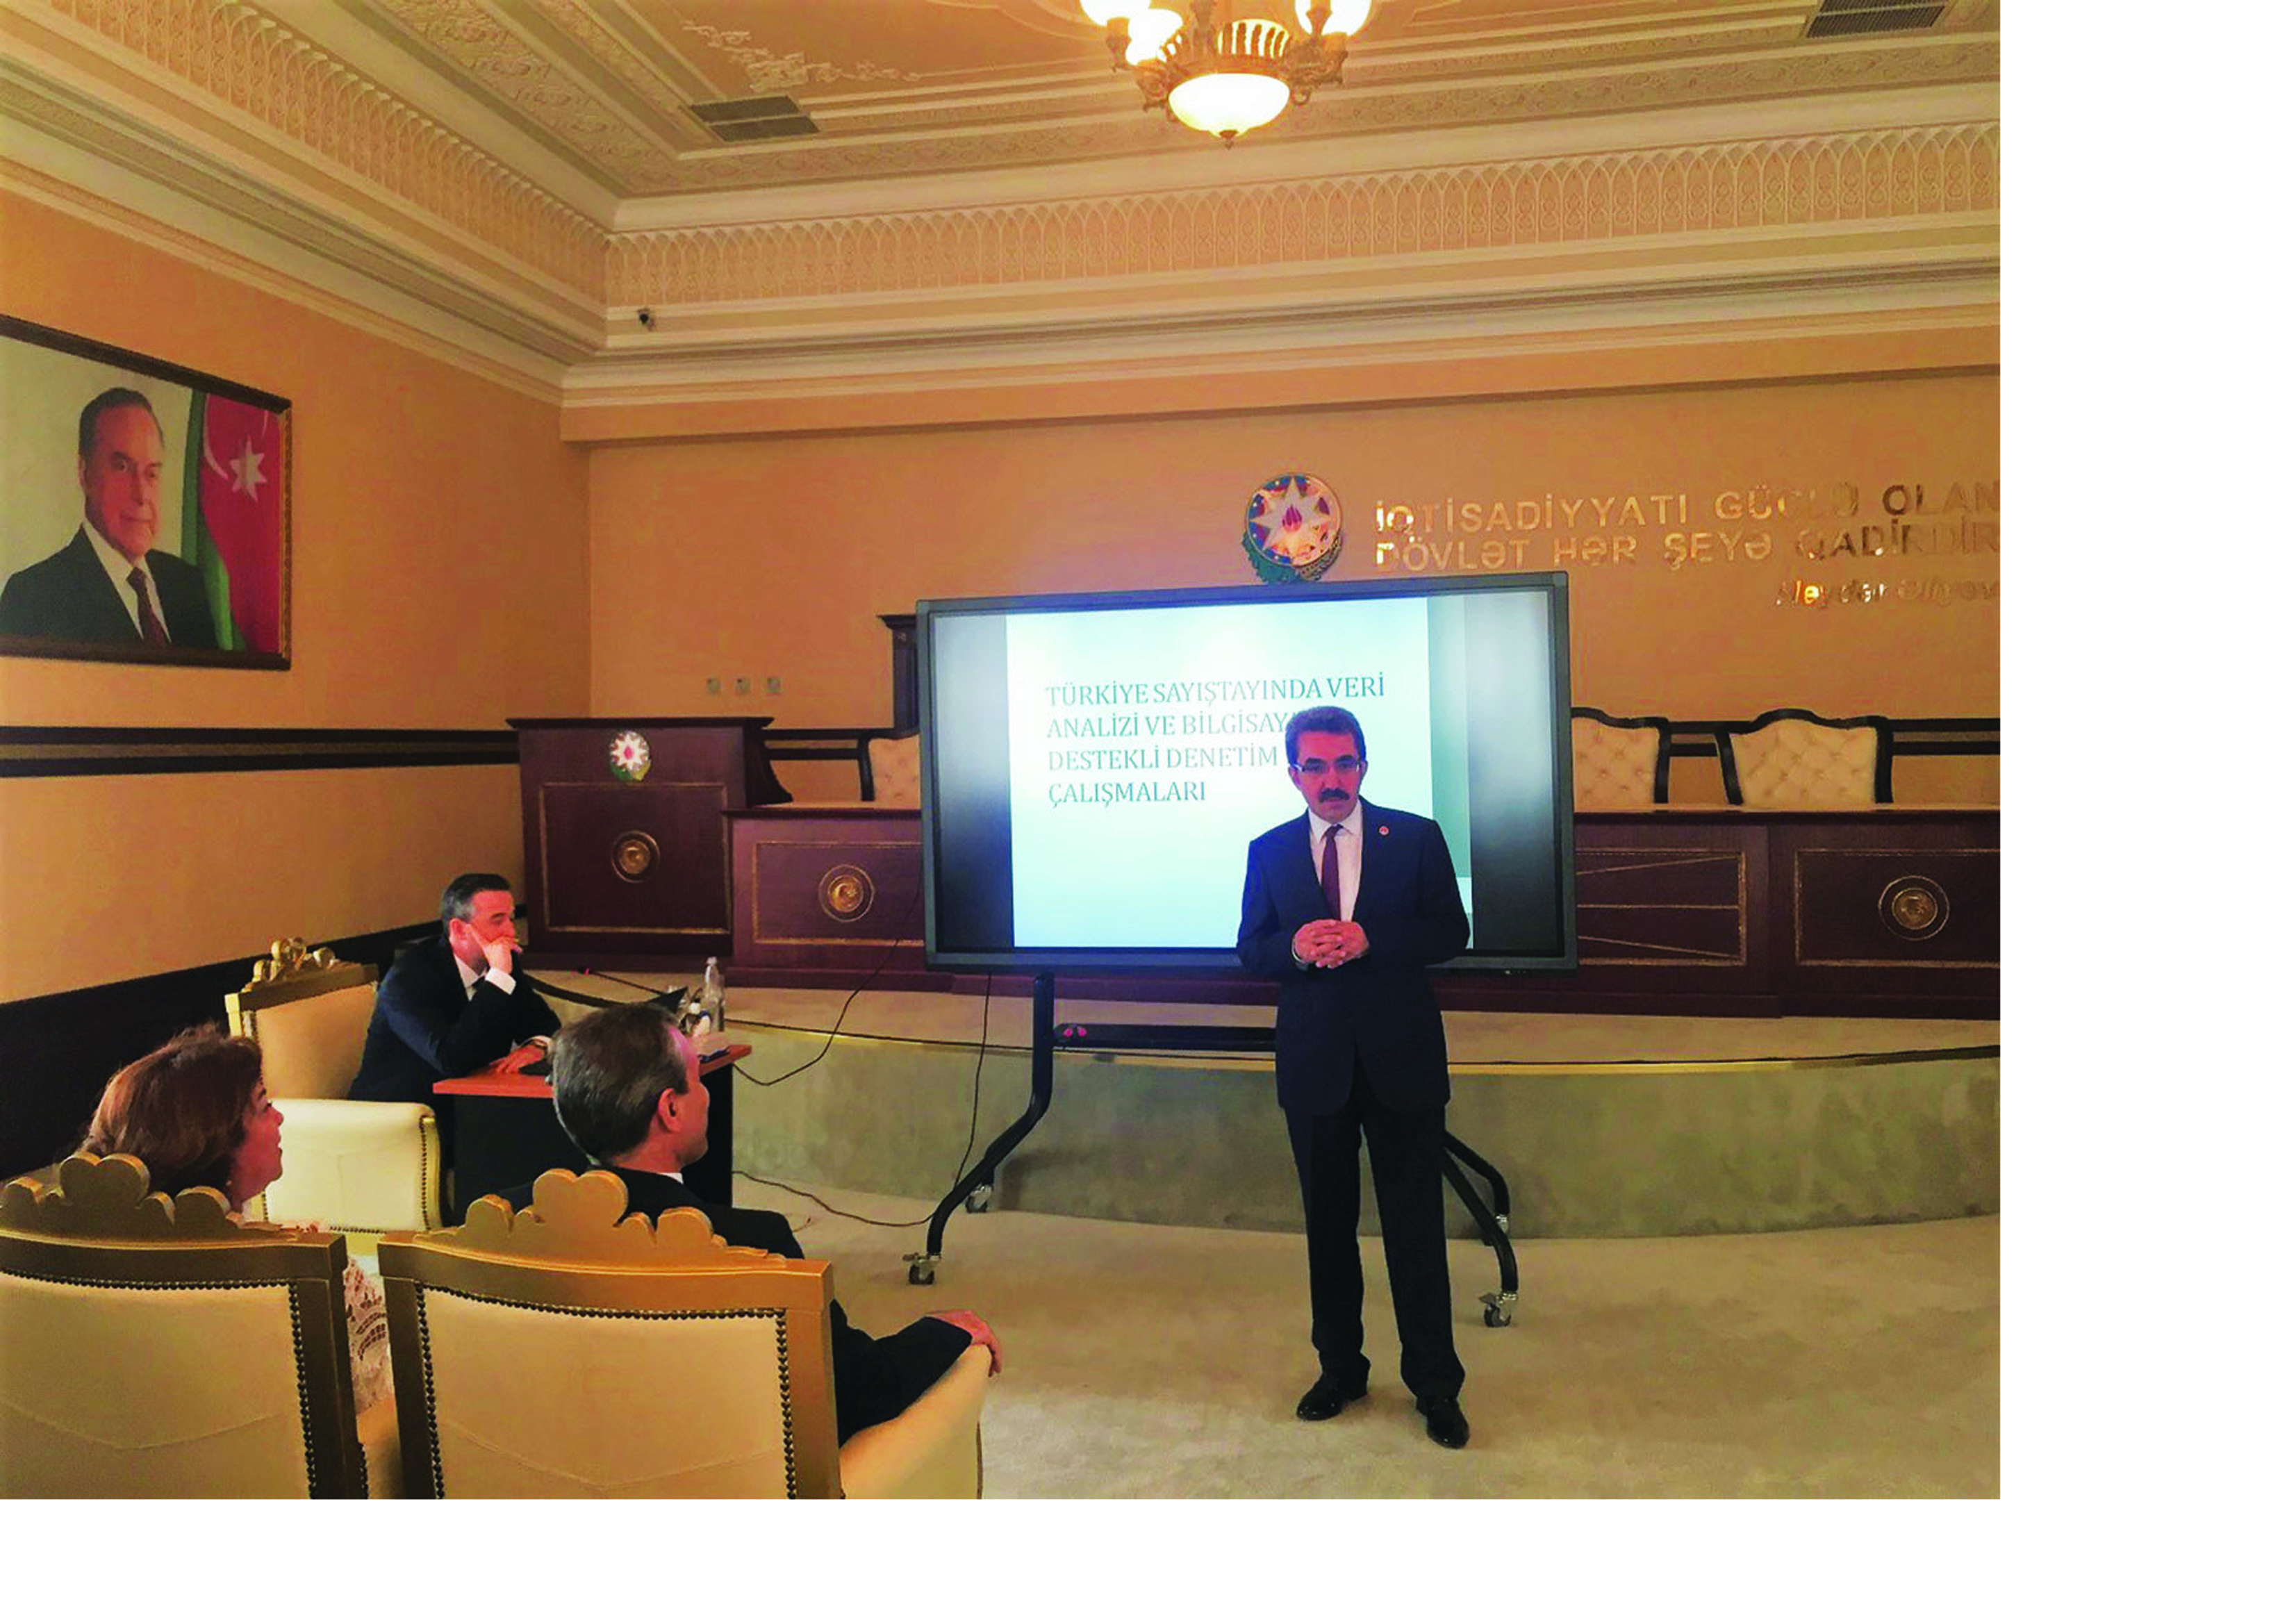 Делегация Турецкого счетного суда выступила с презентацией в Счетной палатеАзербайджана